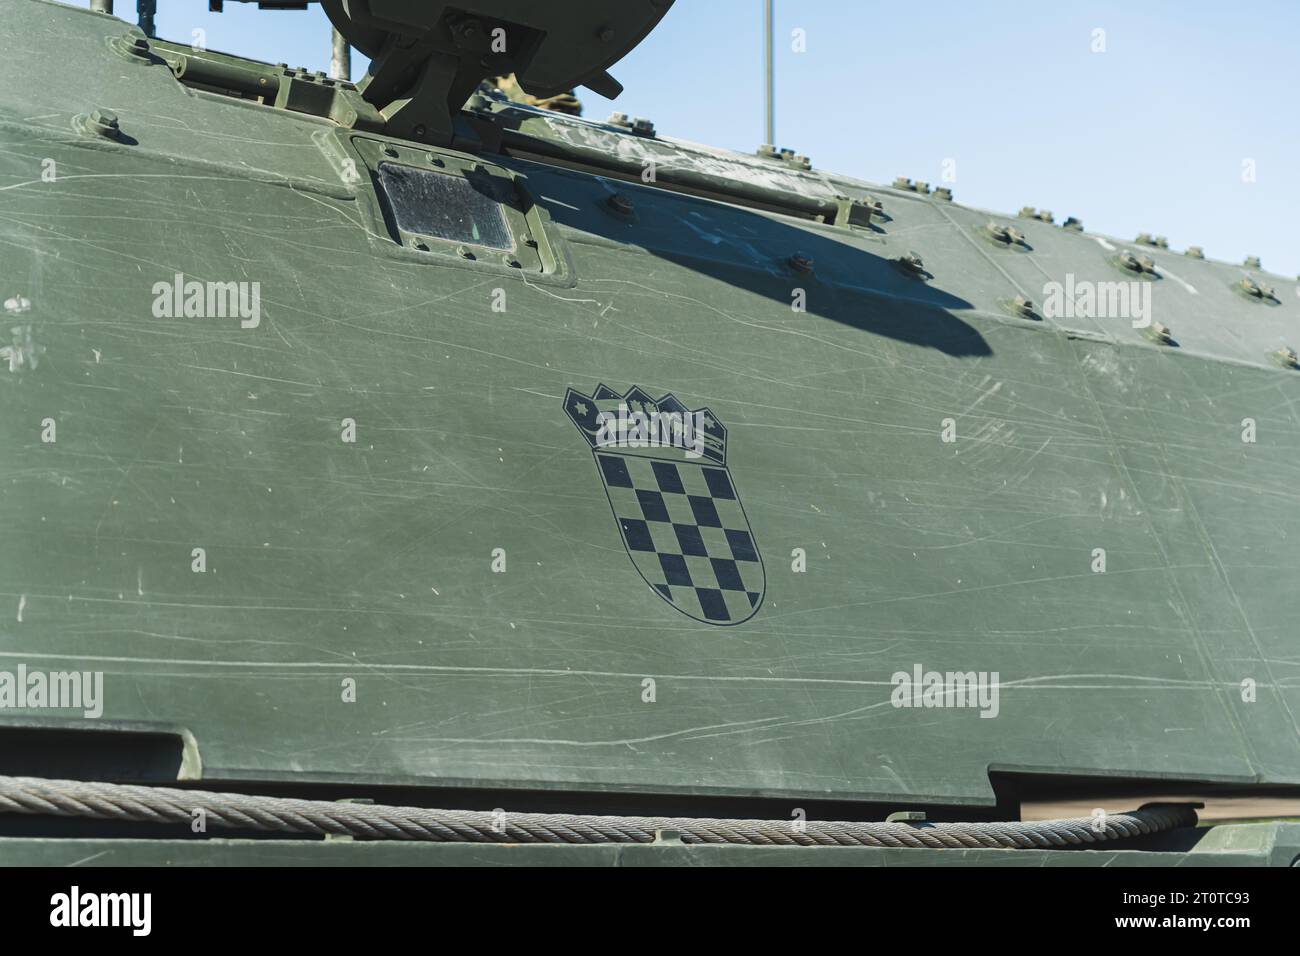 Bandiera croata nera stampata su veicolo militare verde scuro. Veicoli militari moderni alla dimostrazione. Foto di alta qualità Foto Stock